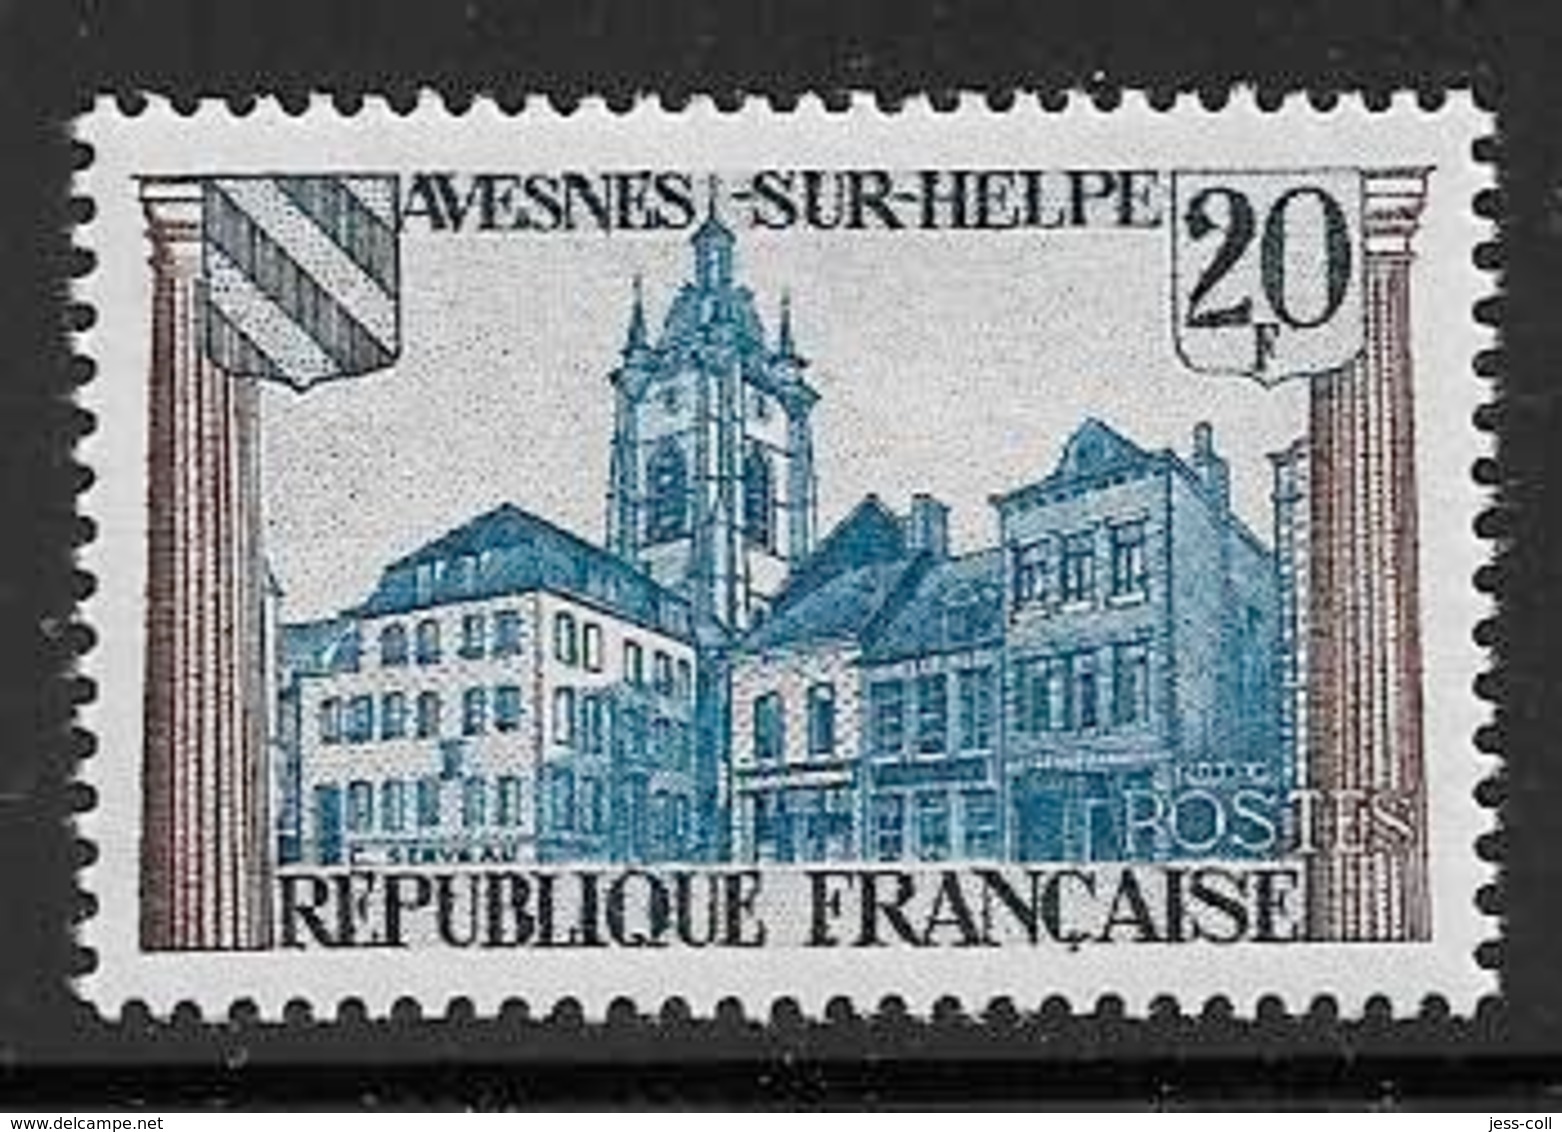 Maury 1221 - 20 F Avesnes Sur Helpe - * - Unused Stamps